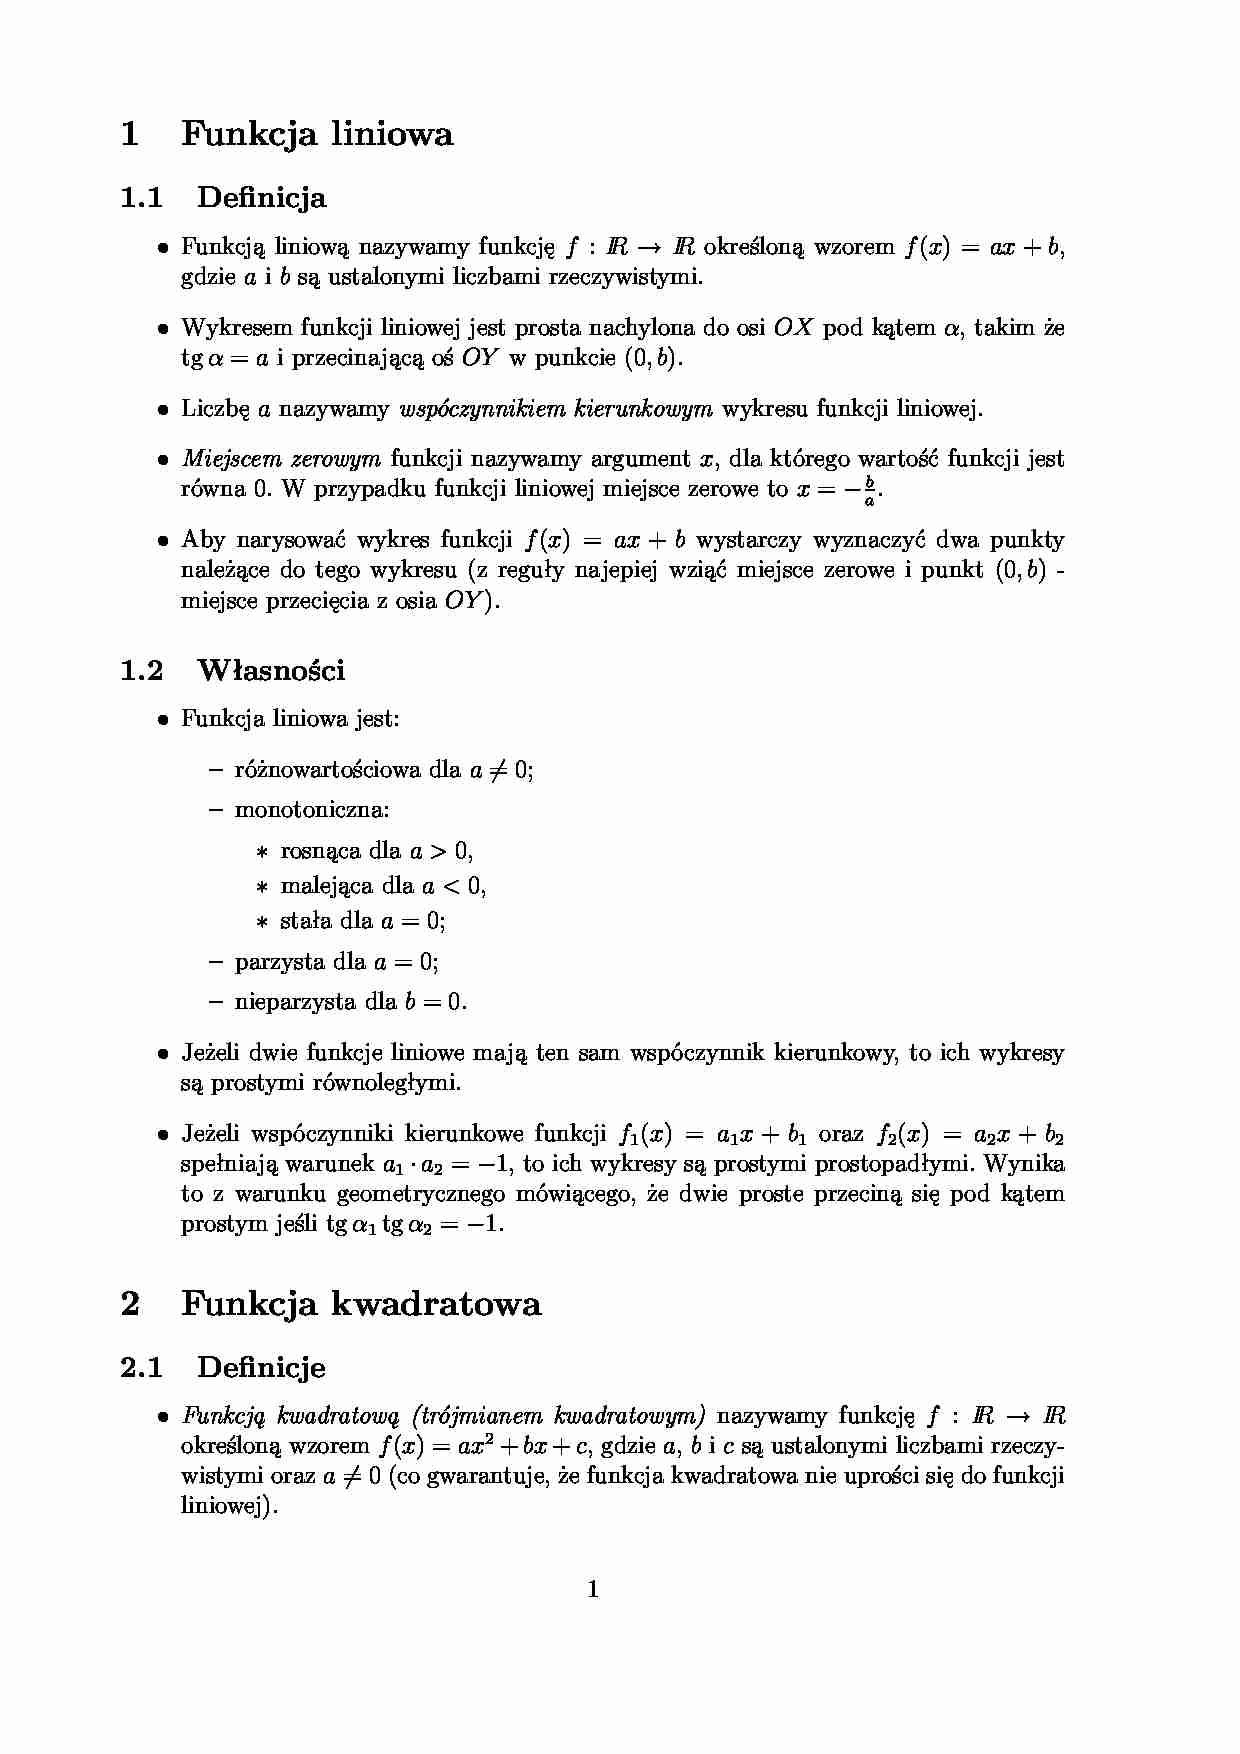 Funkcje - pojęcia podstawowe - Własności - strona 1